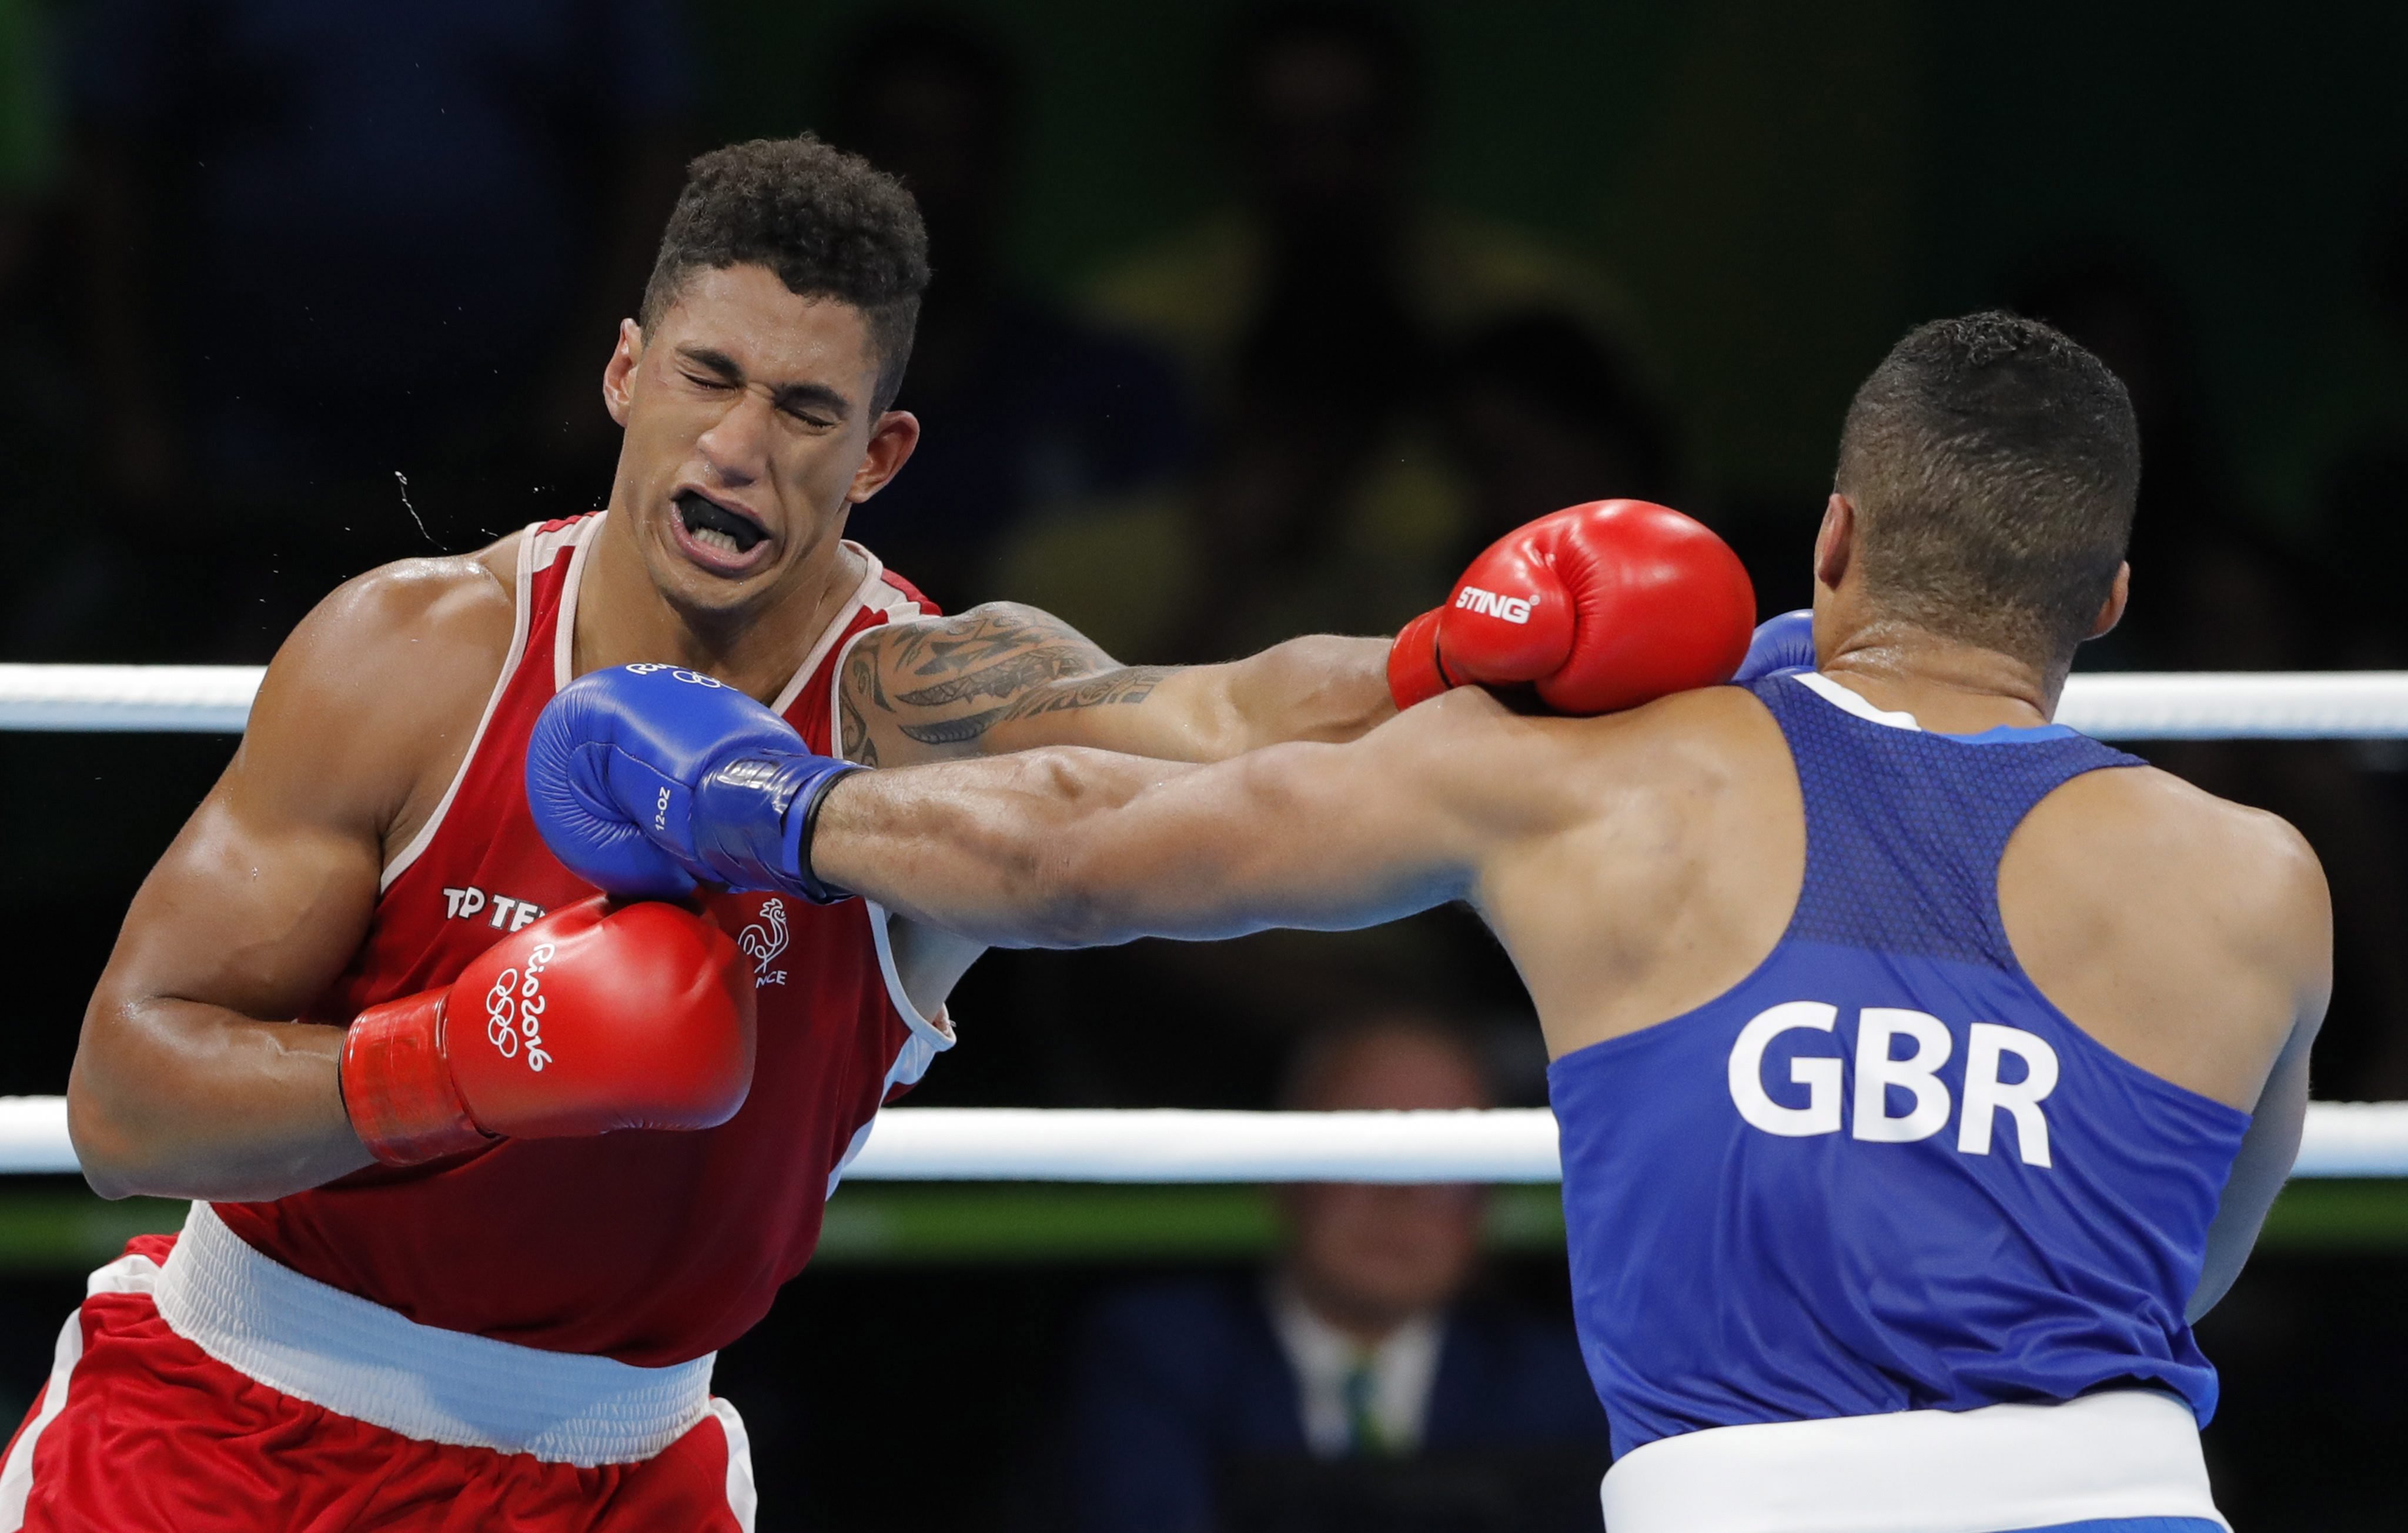 Kiderült, hogy rendszerszintű csalással manipulálták a riói olimpia bokszmeccseit